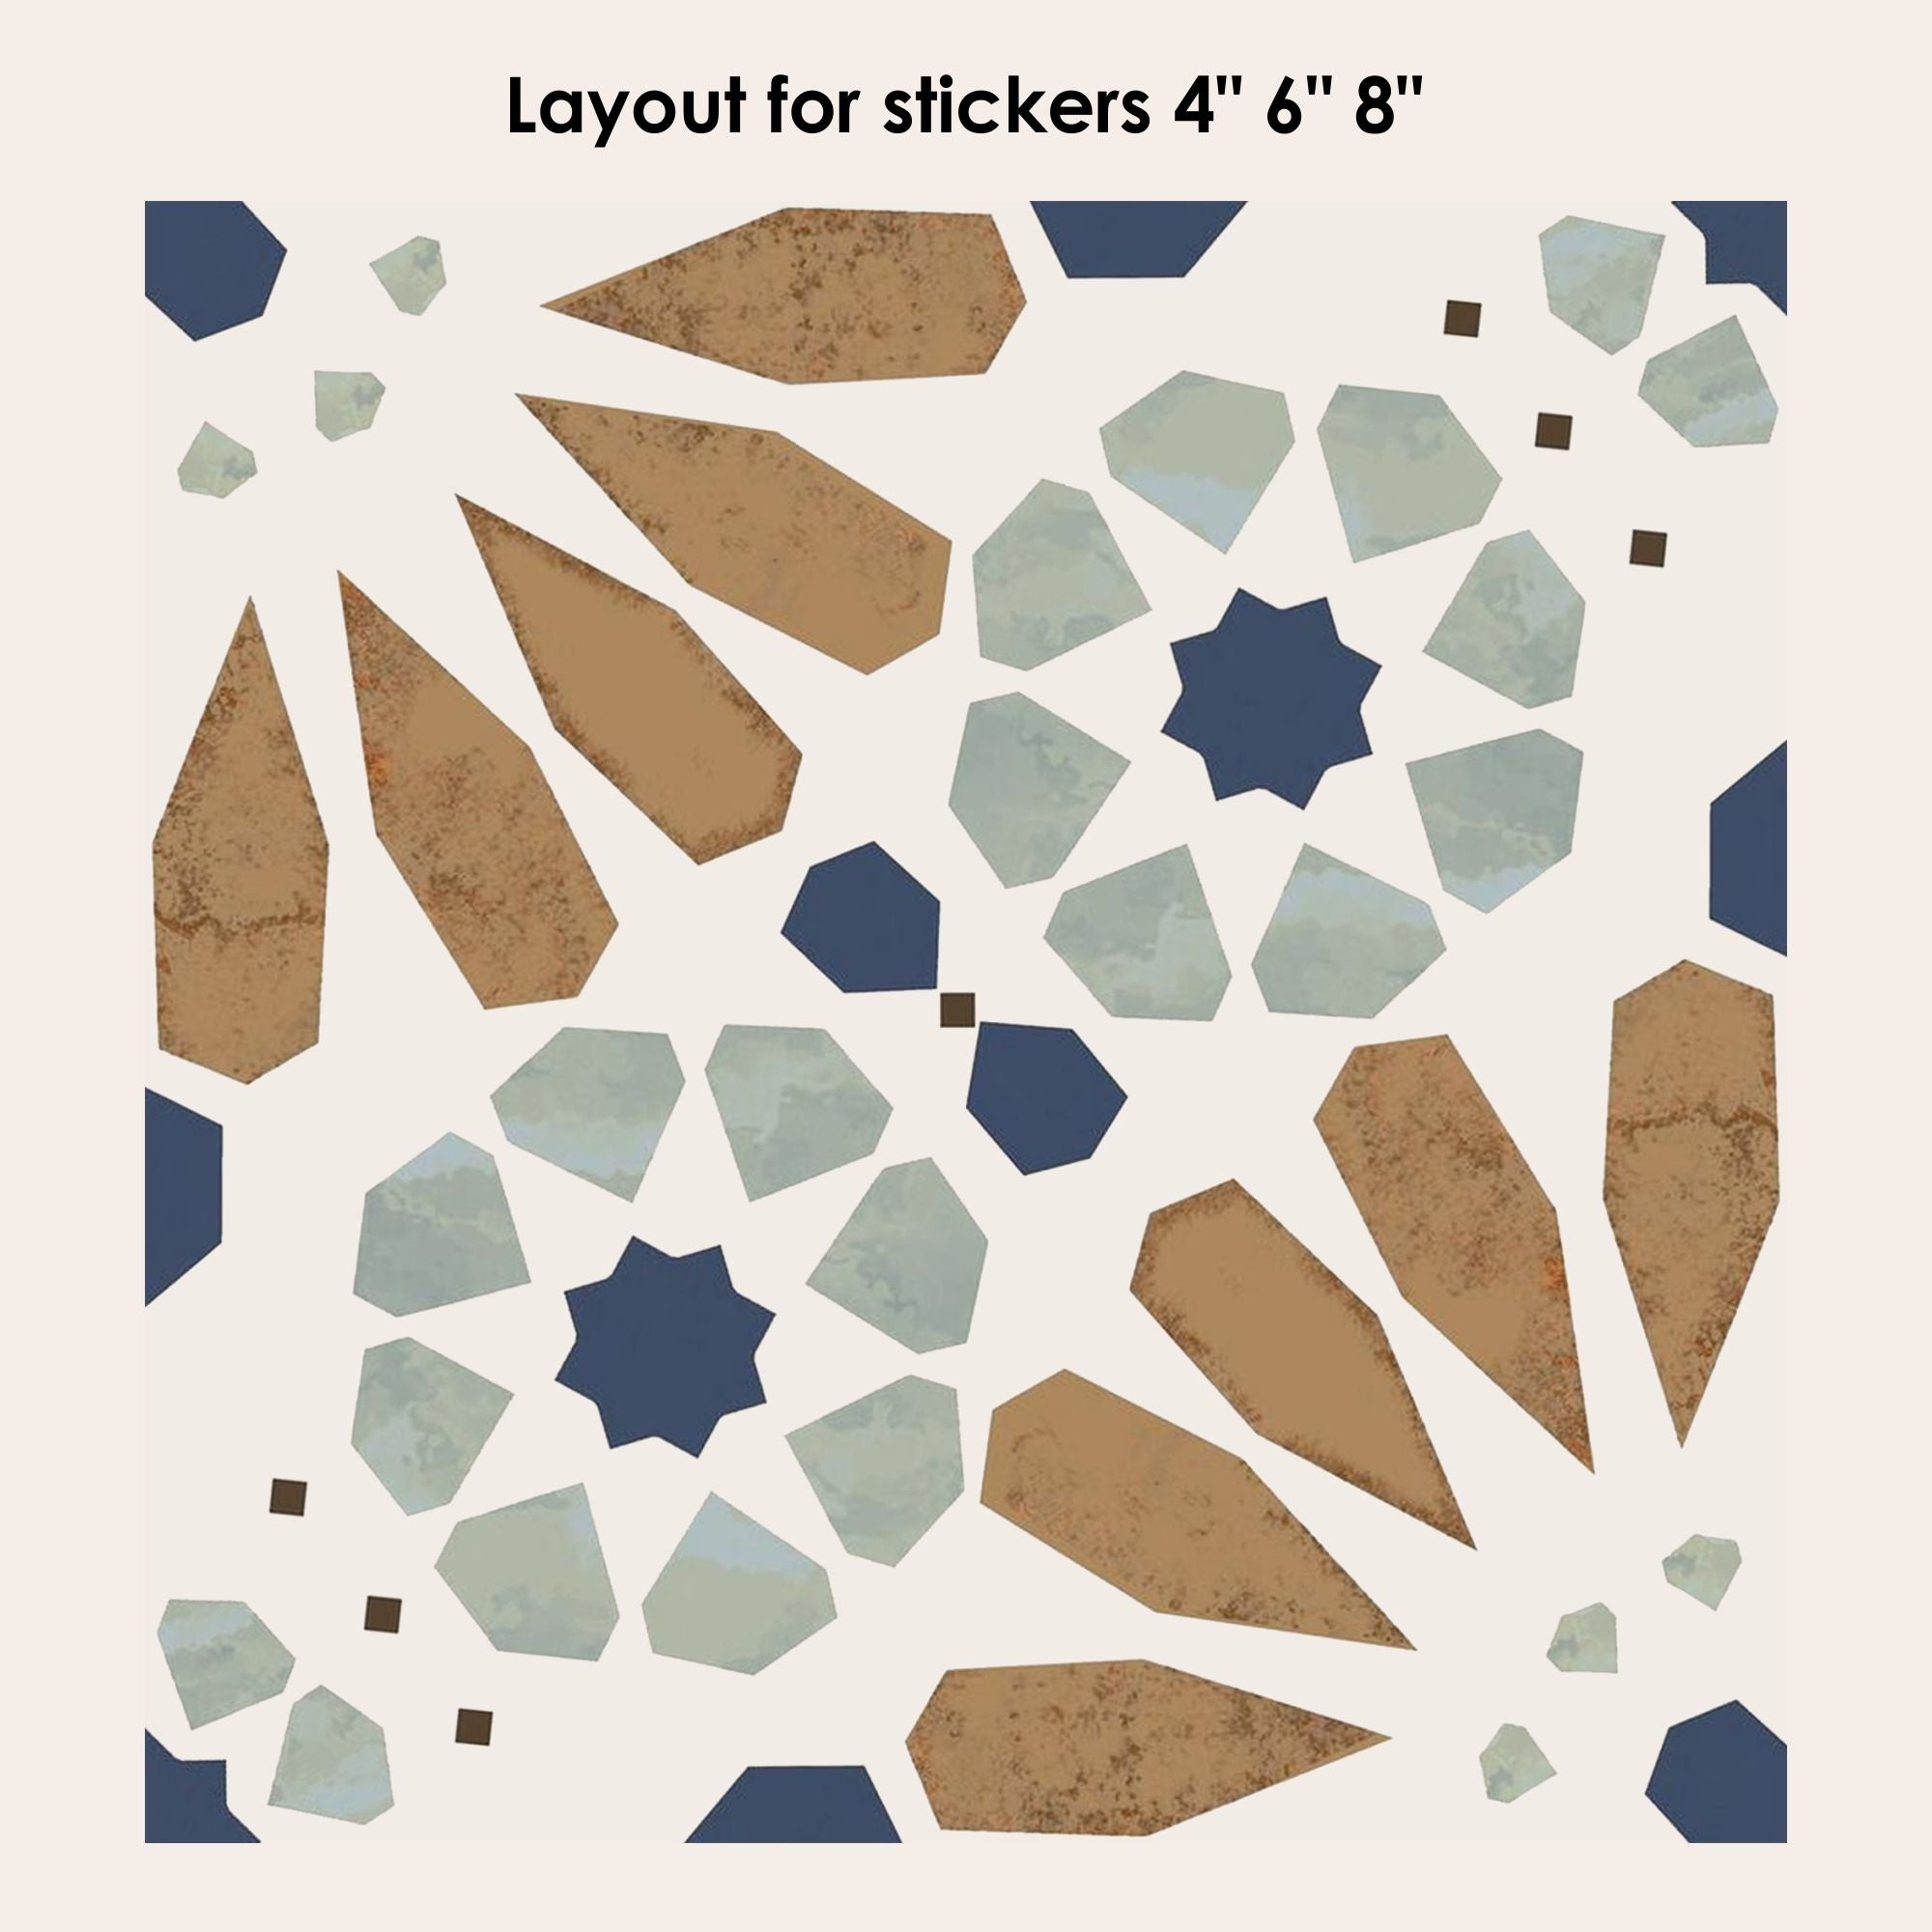 Sticker carrelage adhésif x4, 20 cm X 20 cm, autocollant décoratif